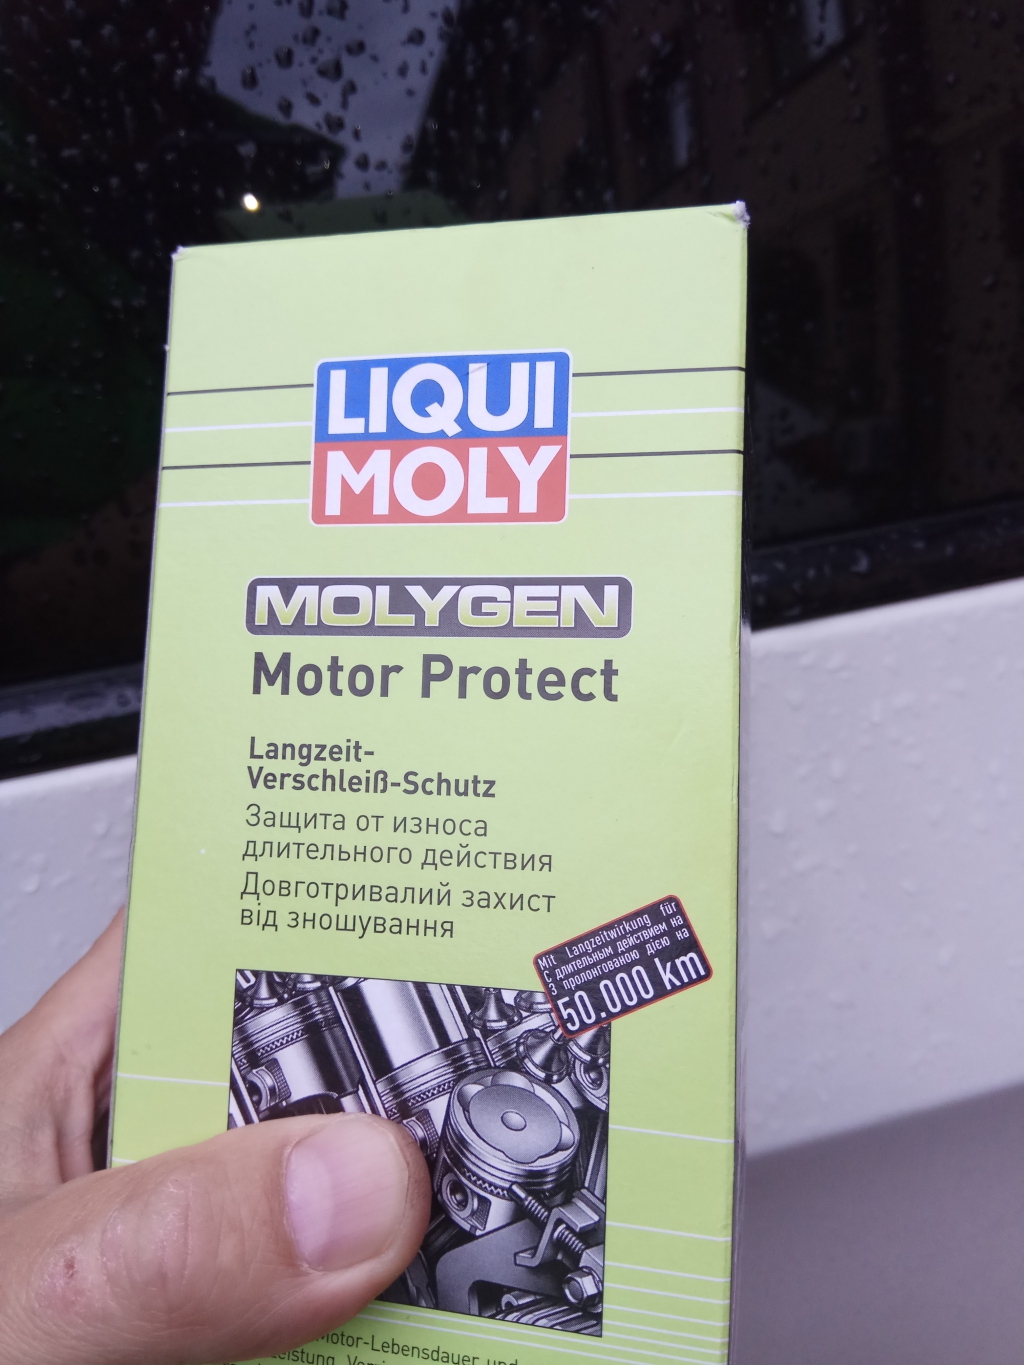 LIQUI MOLY/Ликви Моли - Антифрикционная присадка Molygen Motor Protect лучшая